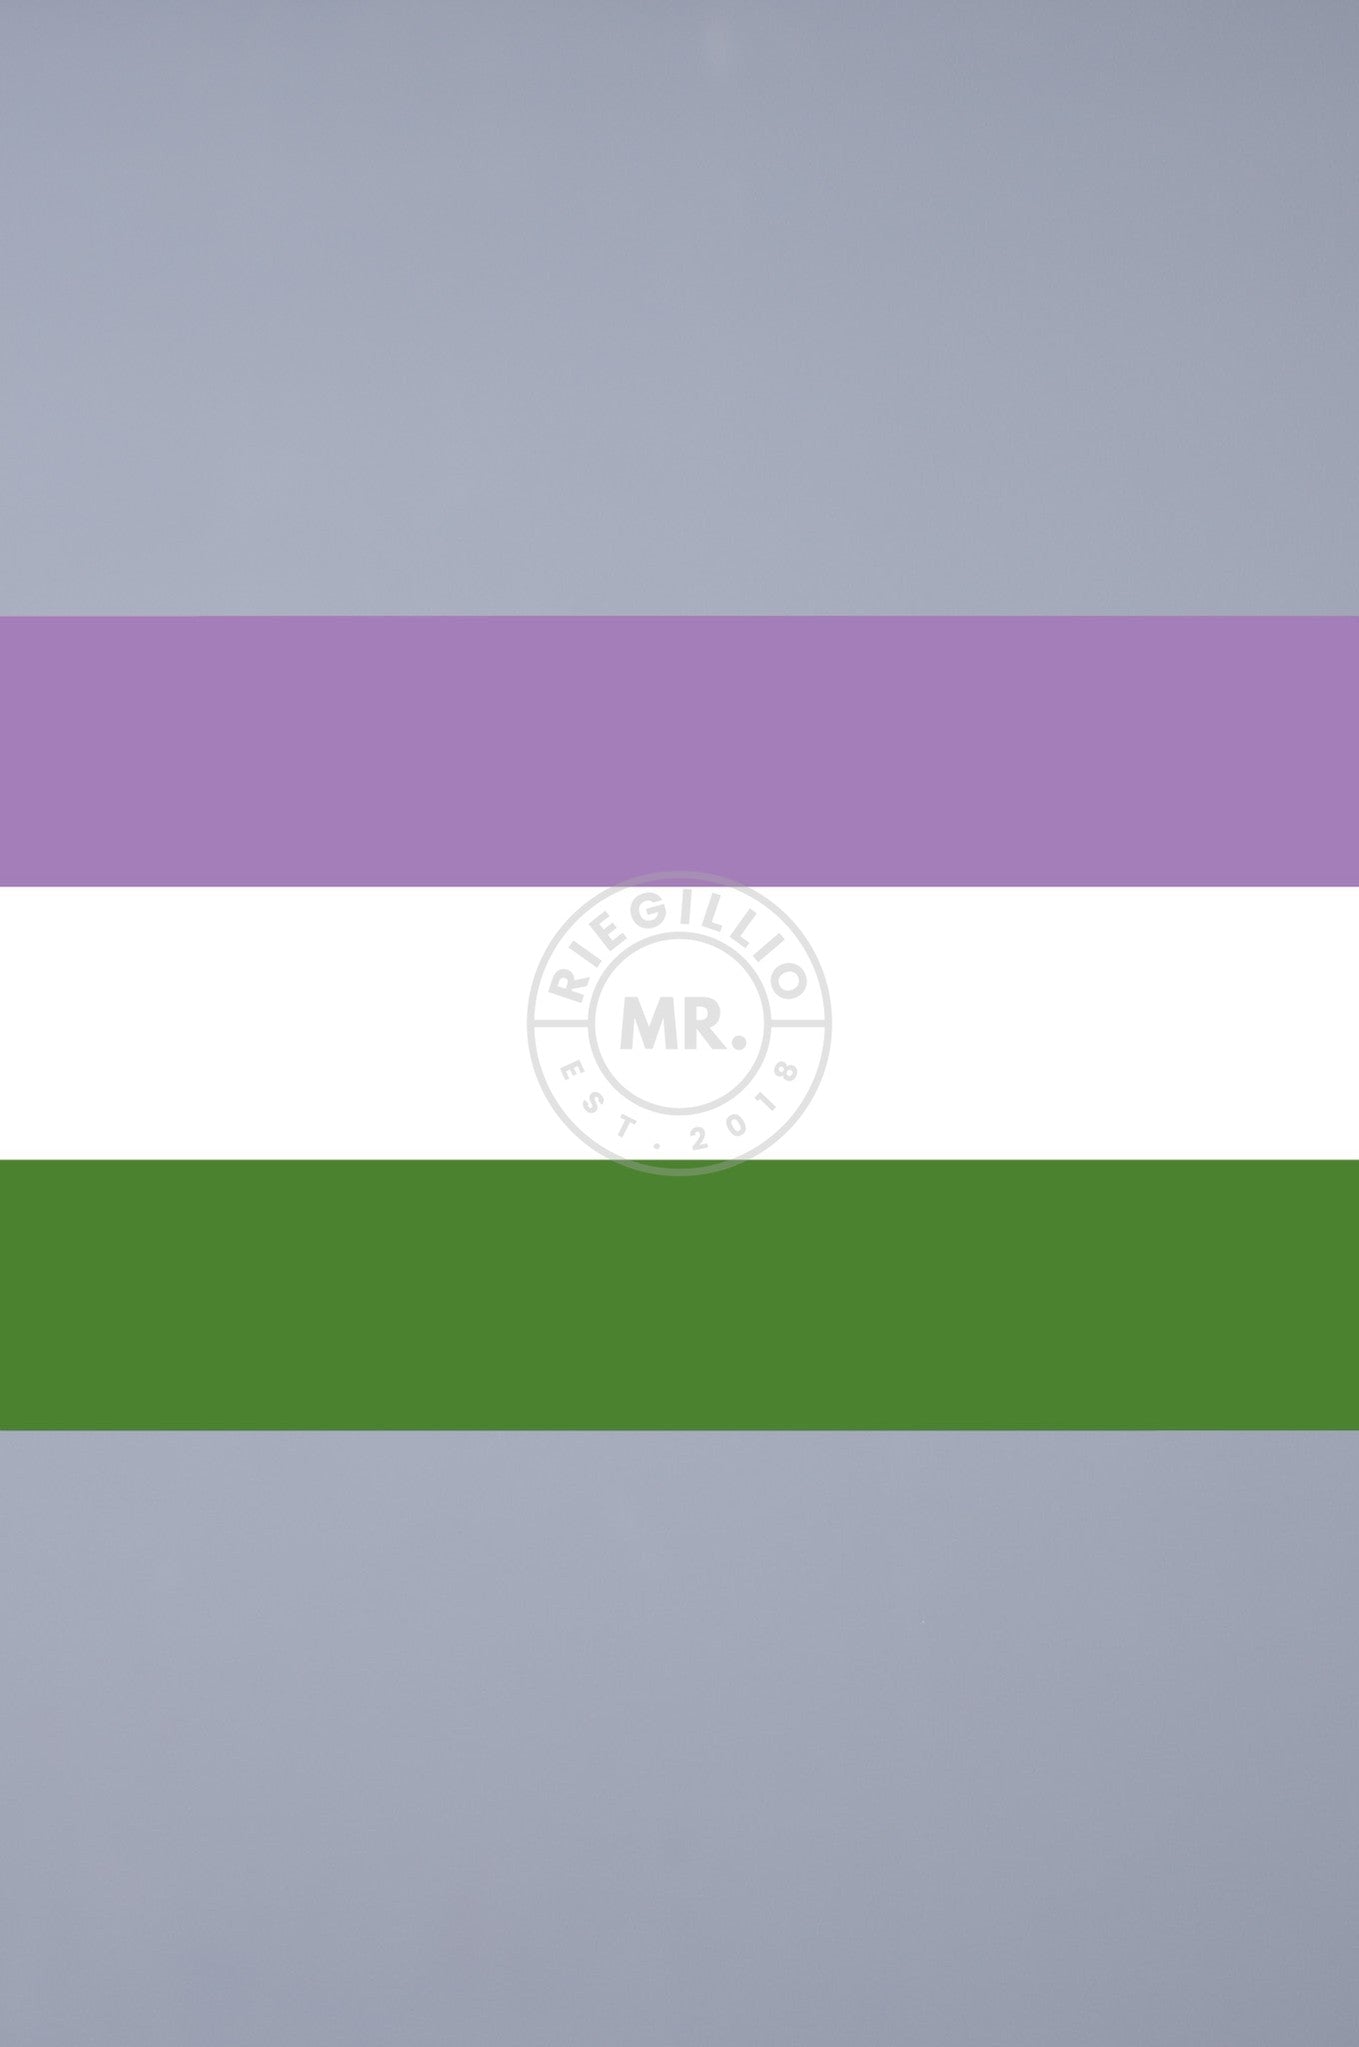 Pride Flag - Genderqueer - 90 x 150 cm at MR. Riegillio